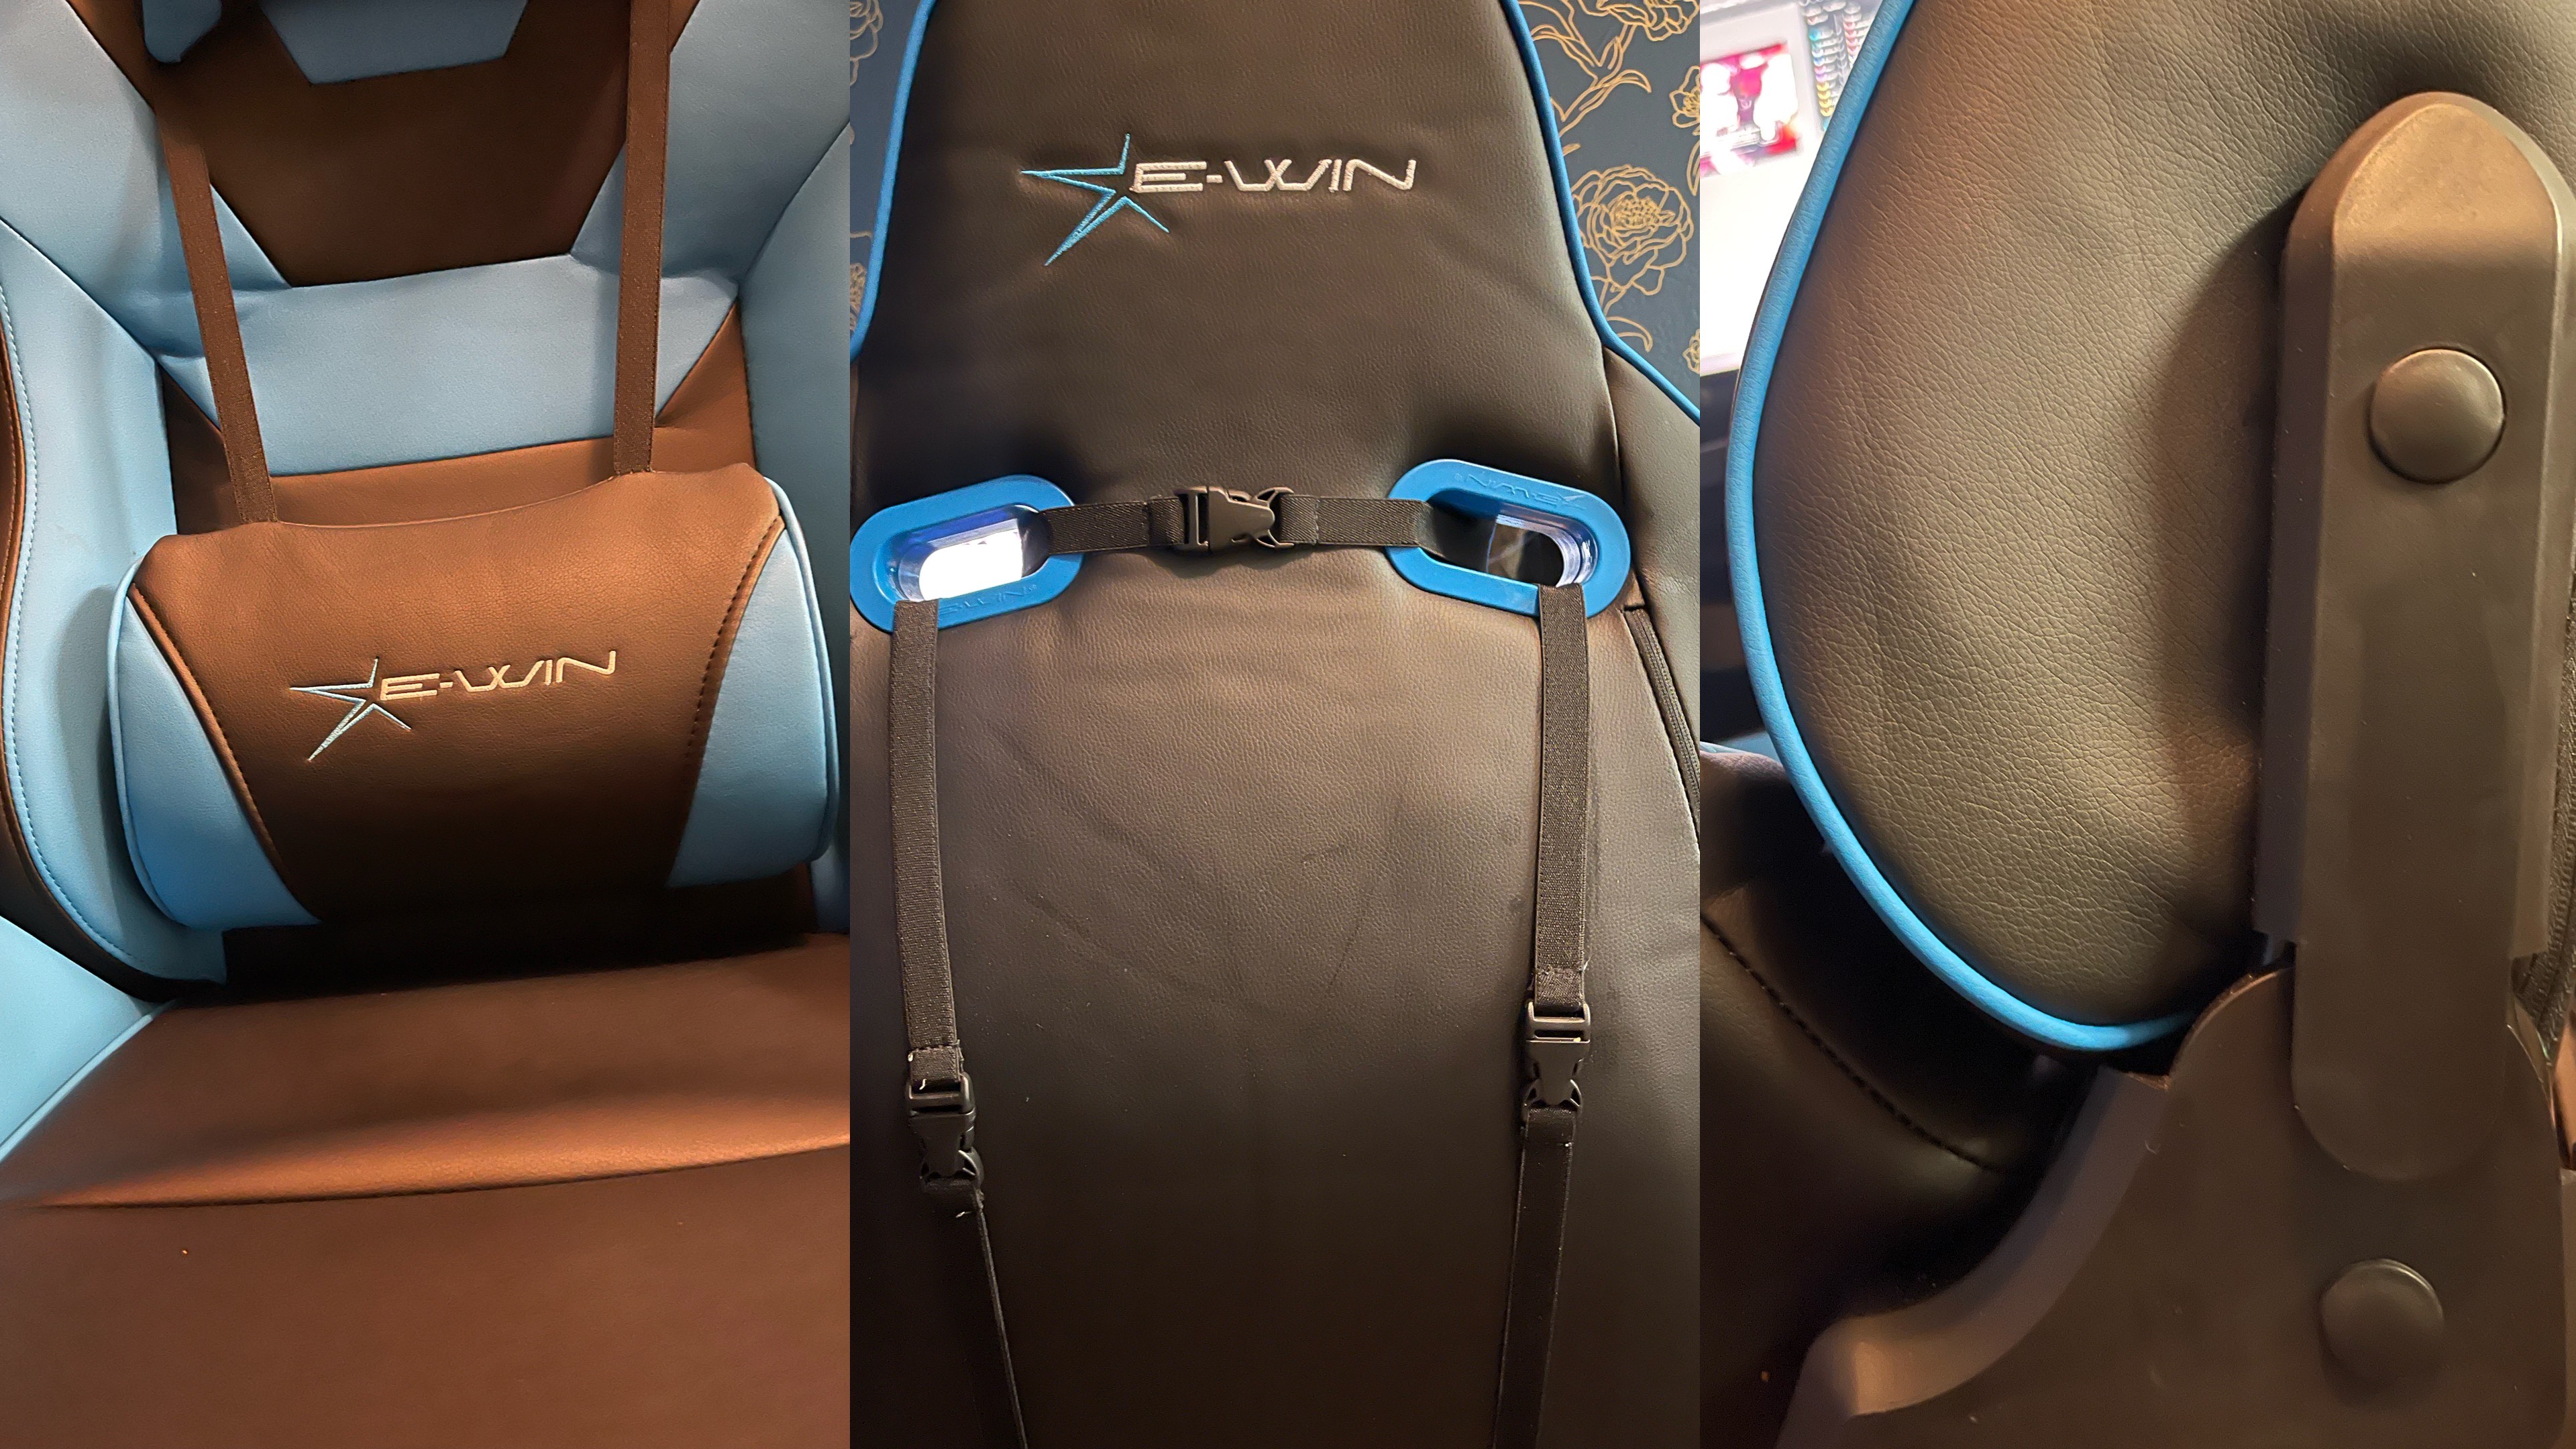 E-Win Flash XL La mejor silla gaming para los más grandes y pesados GamersRD2a